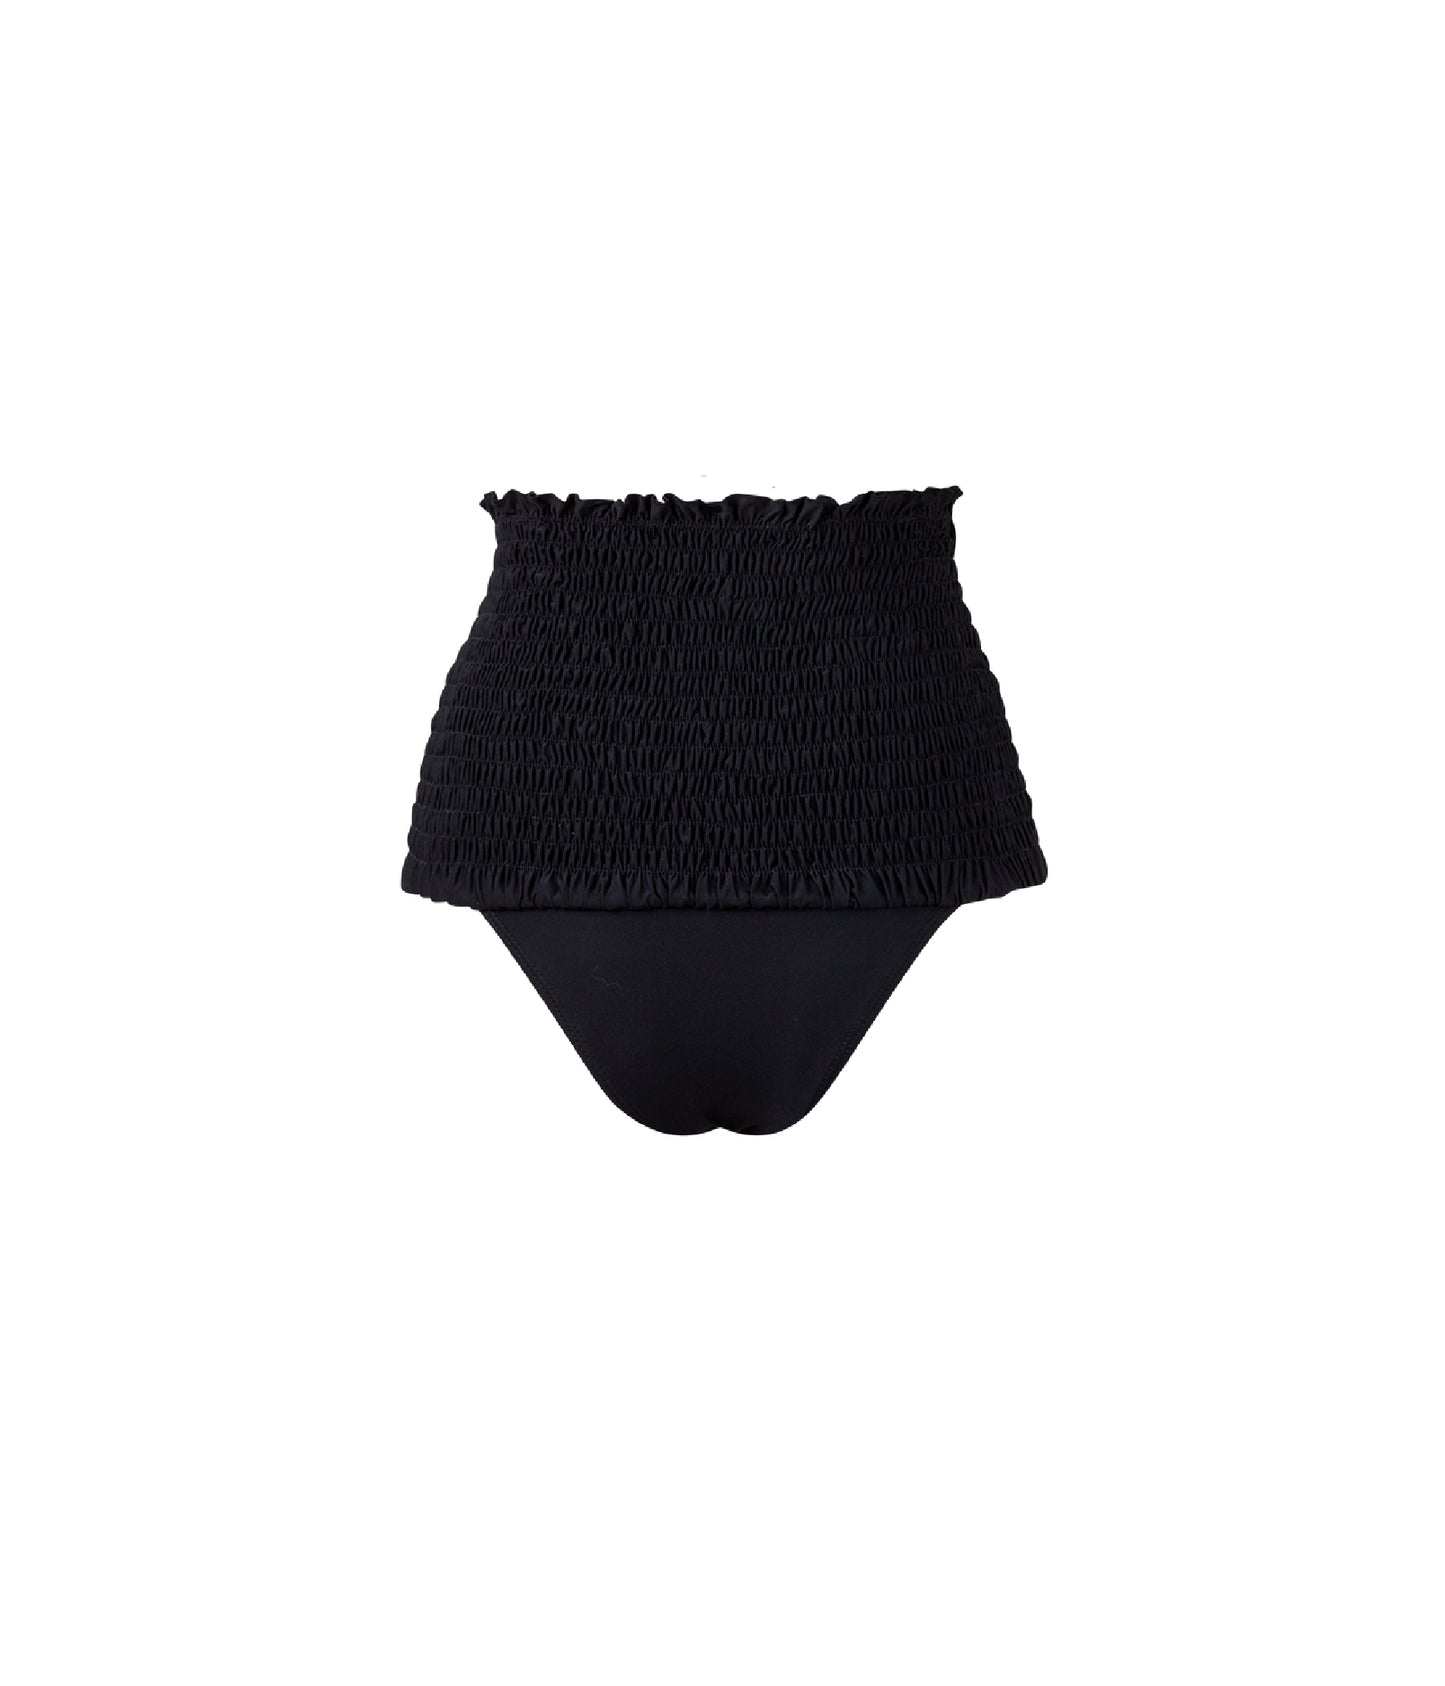 Verdelimon - Bikini Bottom - Nilo - Printed - Black - Back